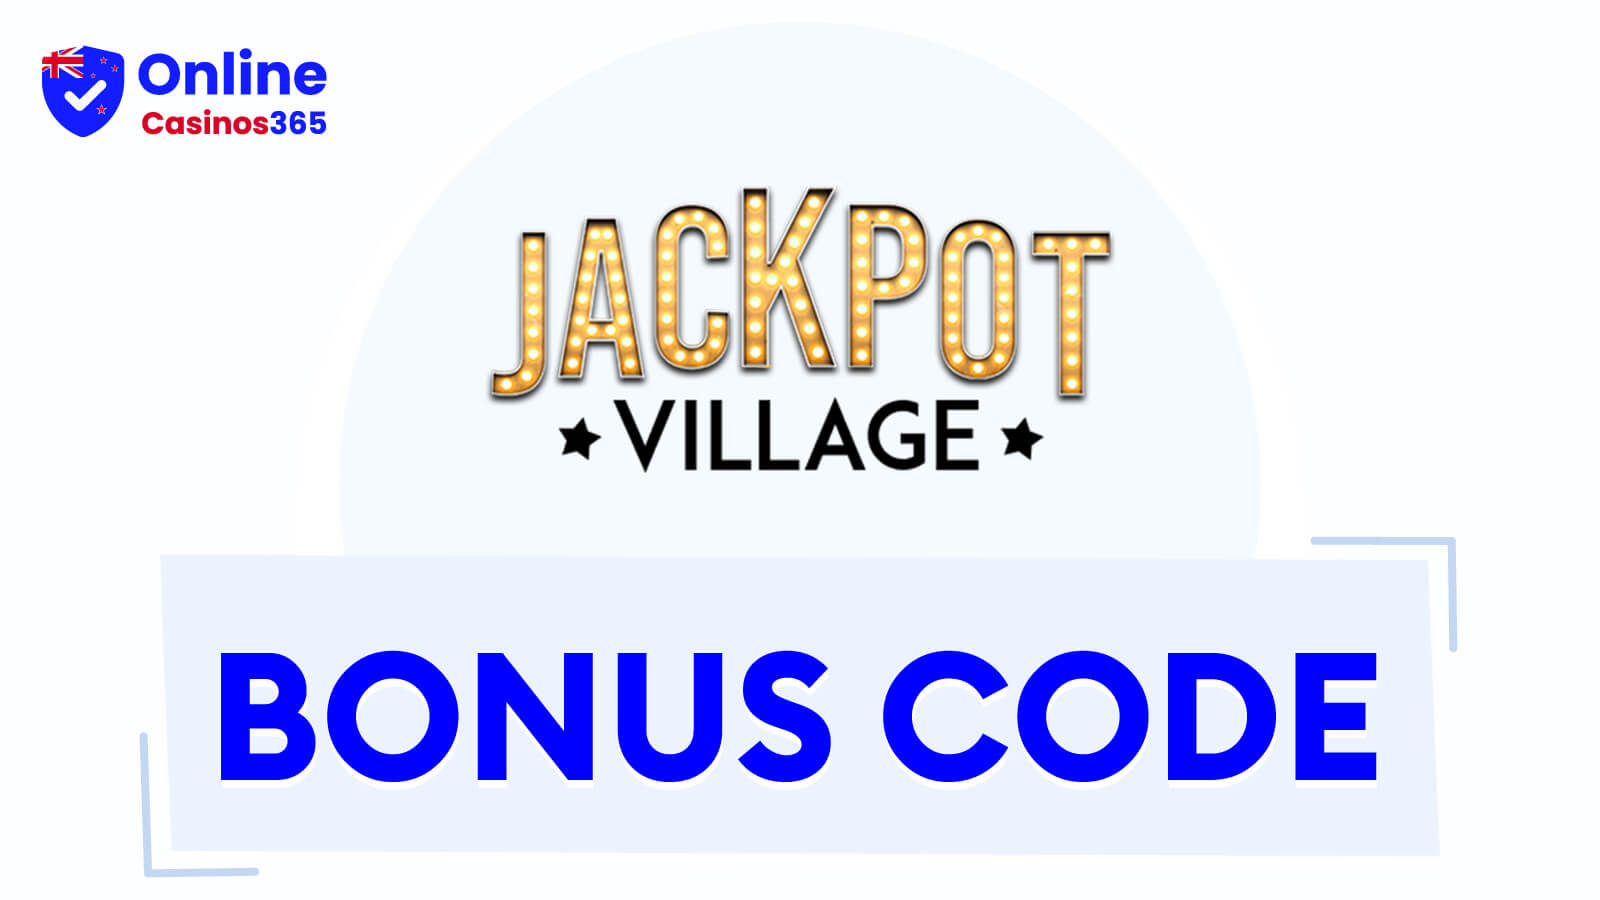 jackpot village no deposit bonus